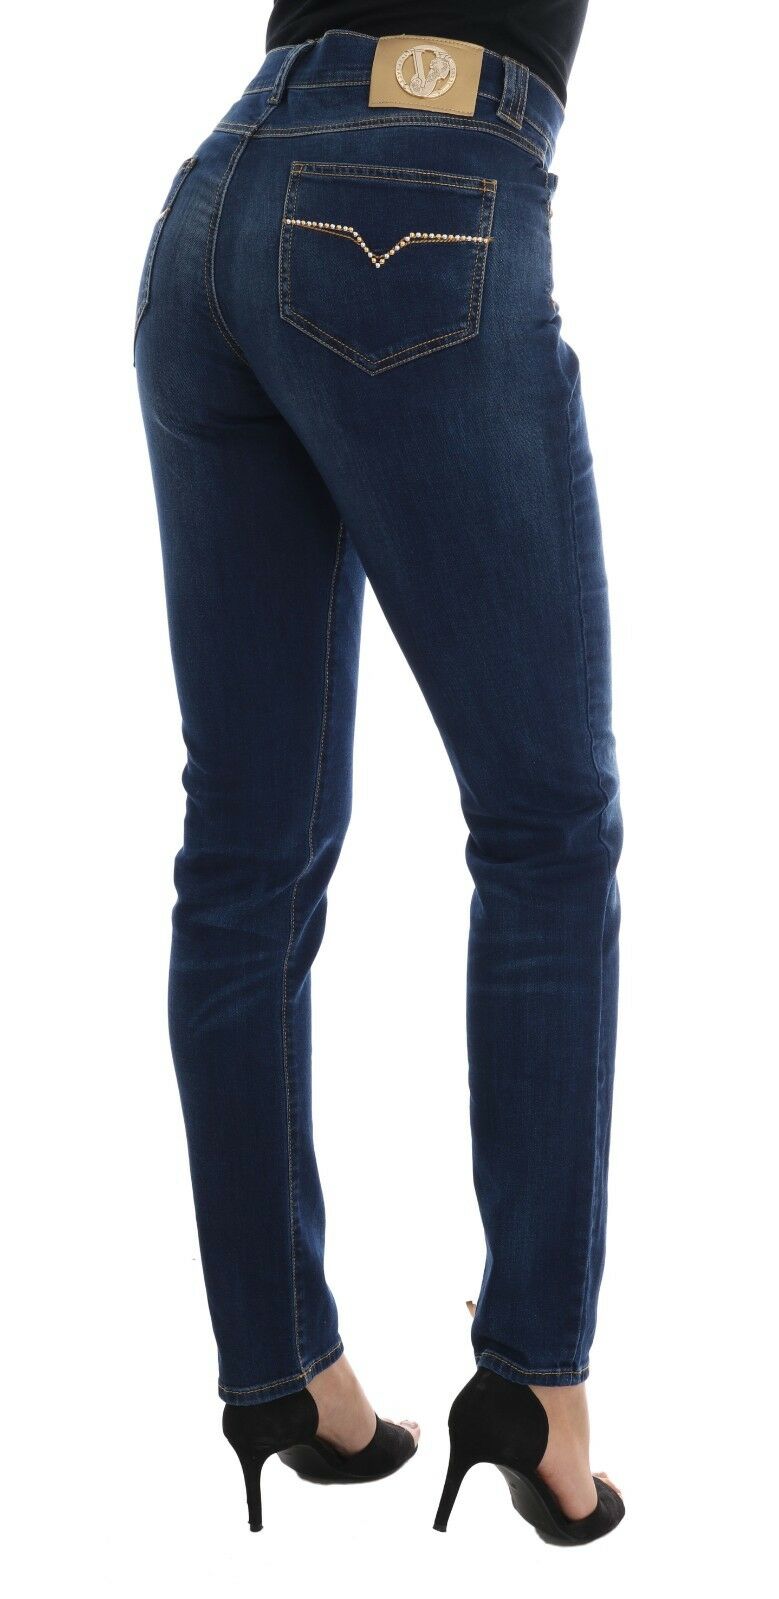 Versace Jeans Blue Wash Cotton Stretch Slim Denim Jeans Pant - Fizigo